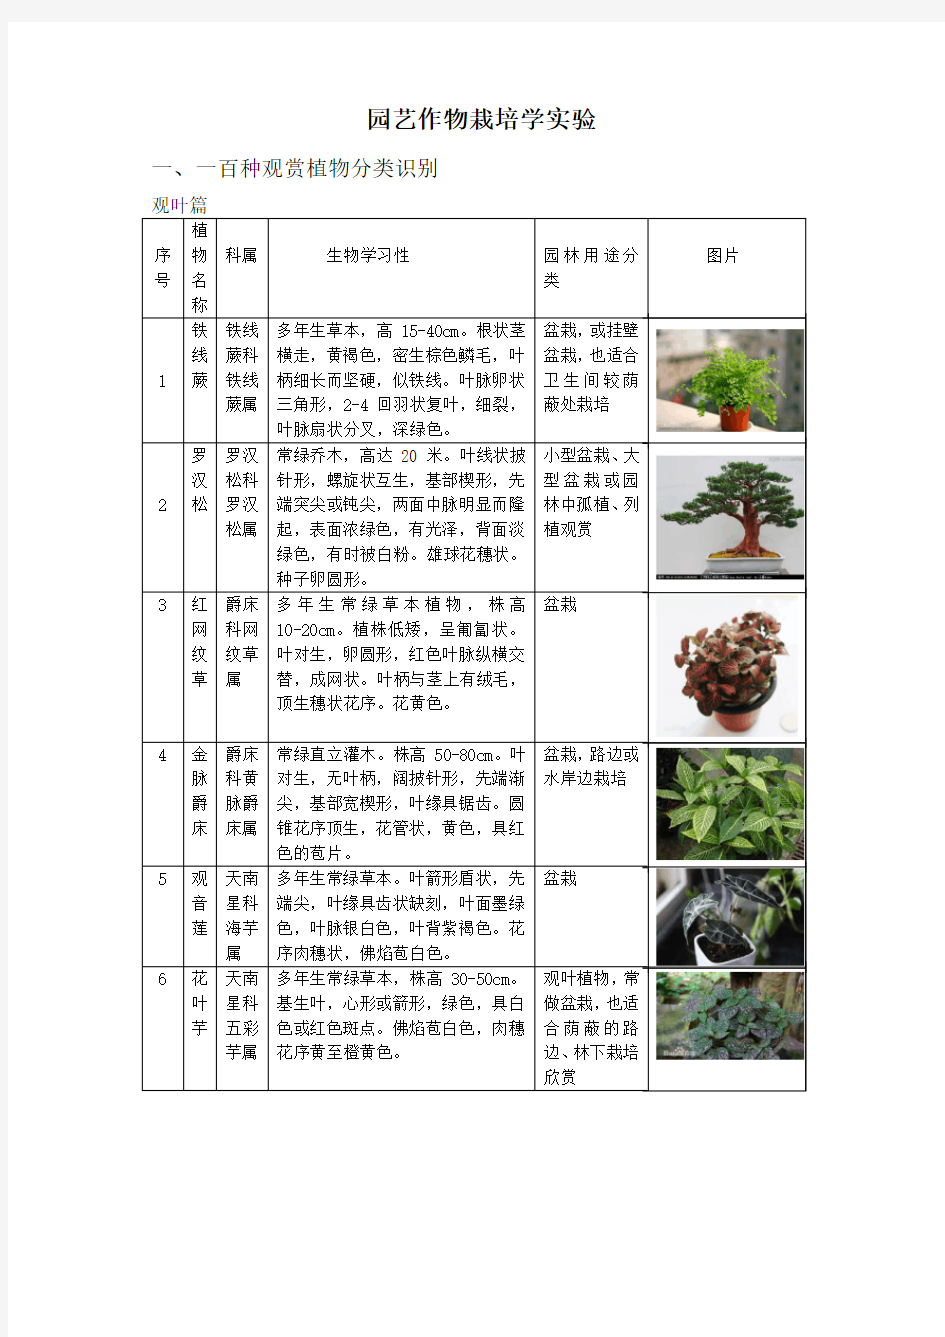 一百种观赏植物分类识别